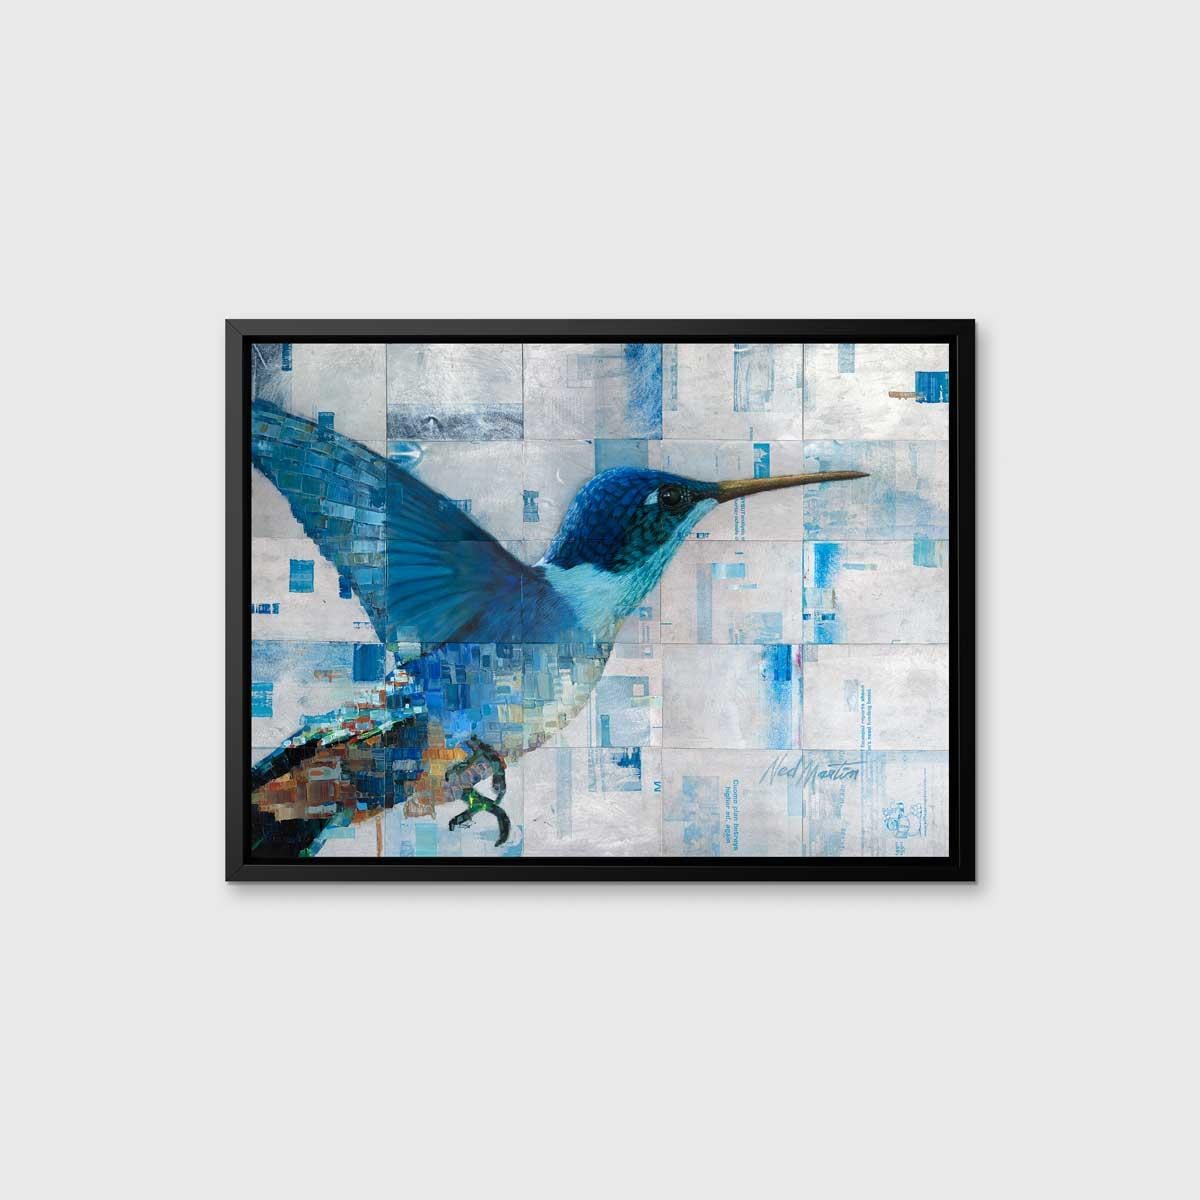 Dieser abstrakte Druck in limitierter Auflage von Ned Martin zeigt einen großen Kolibri als zentralen Mittelpunkt. Der Kolibri ist in verschiedenen Blau- und warmen Orangetönen gehalten, während ein abstrahierter Hintergrund silberne und blaue